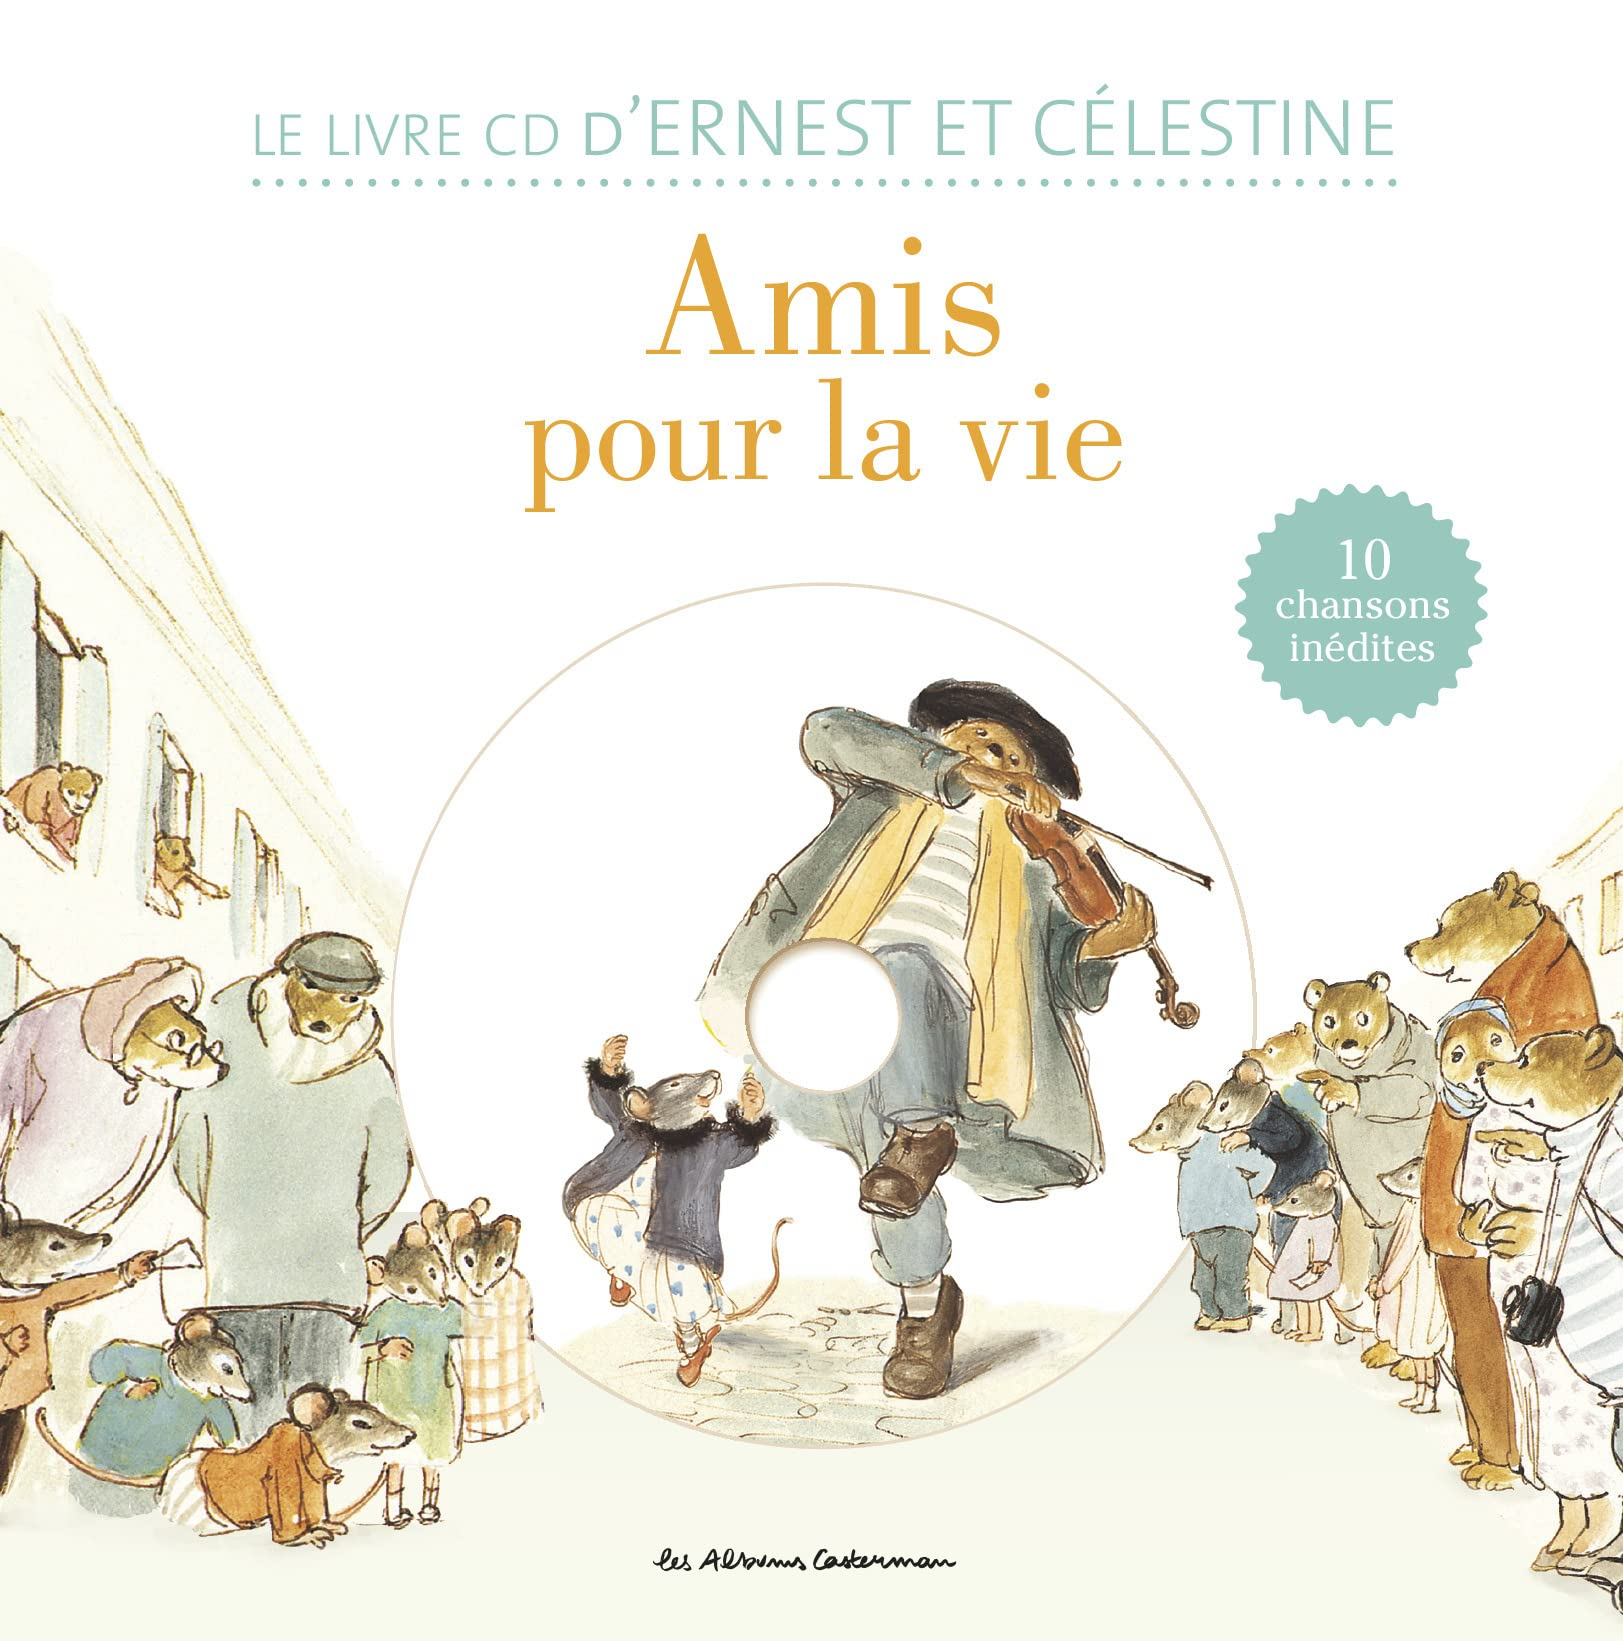 Ernest et Célestine - Amis pour la vie: Livre CD